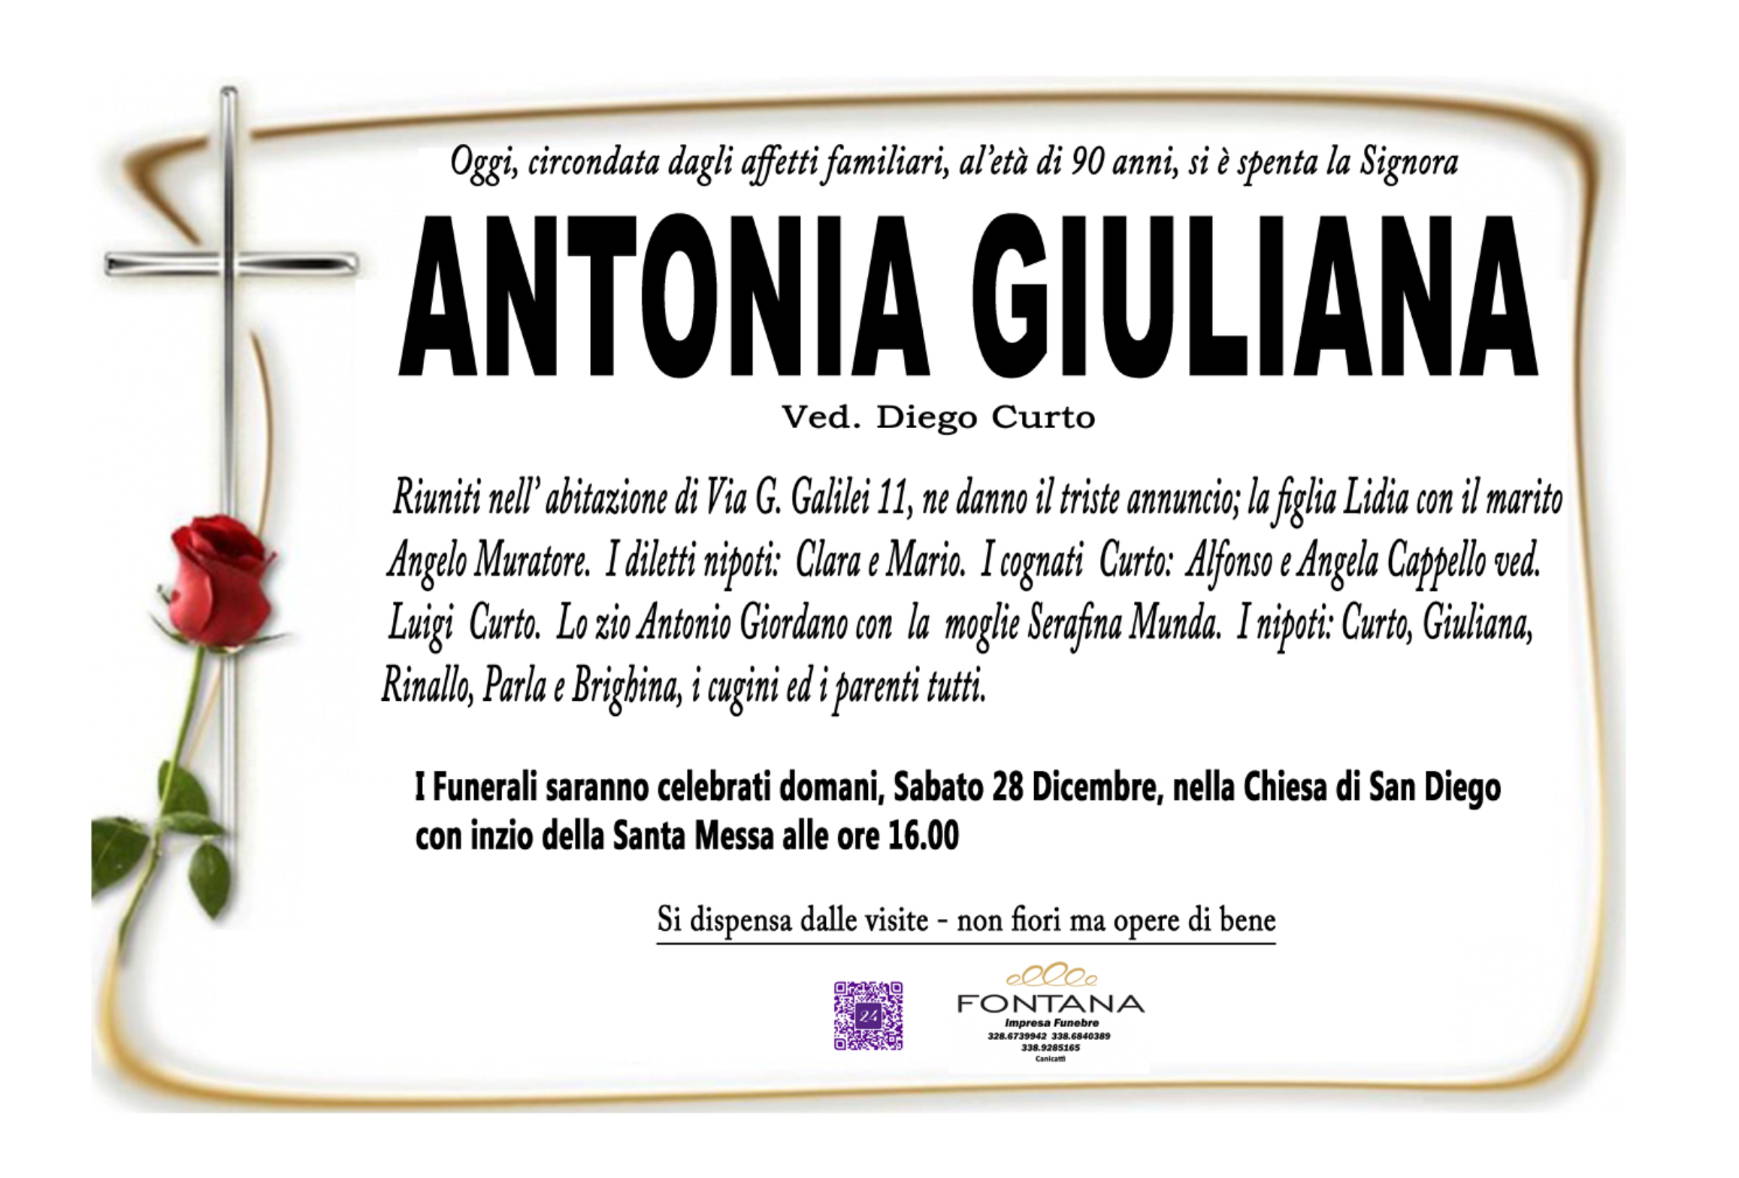 Antonia Giuliana